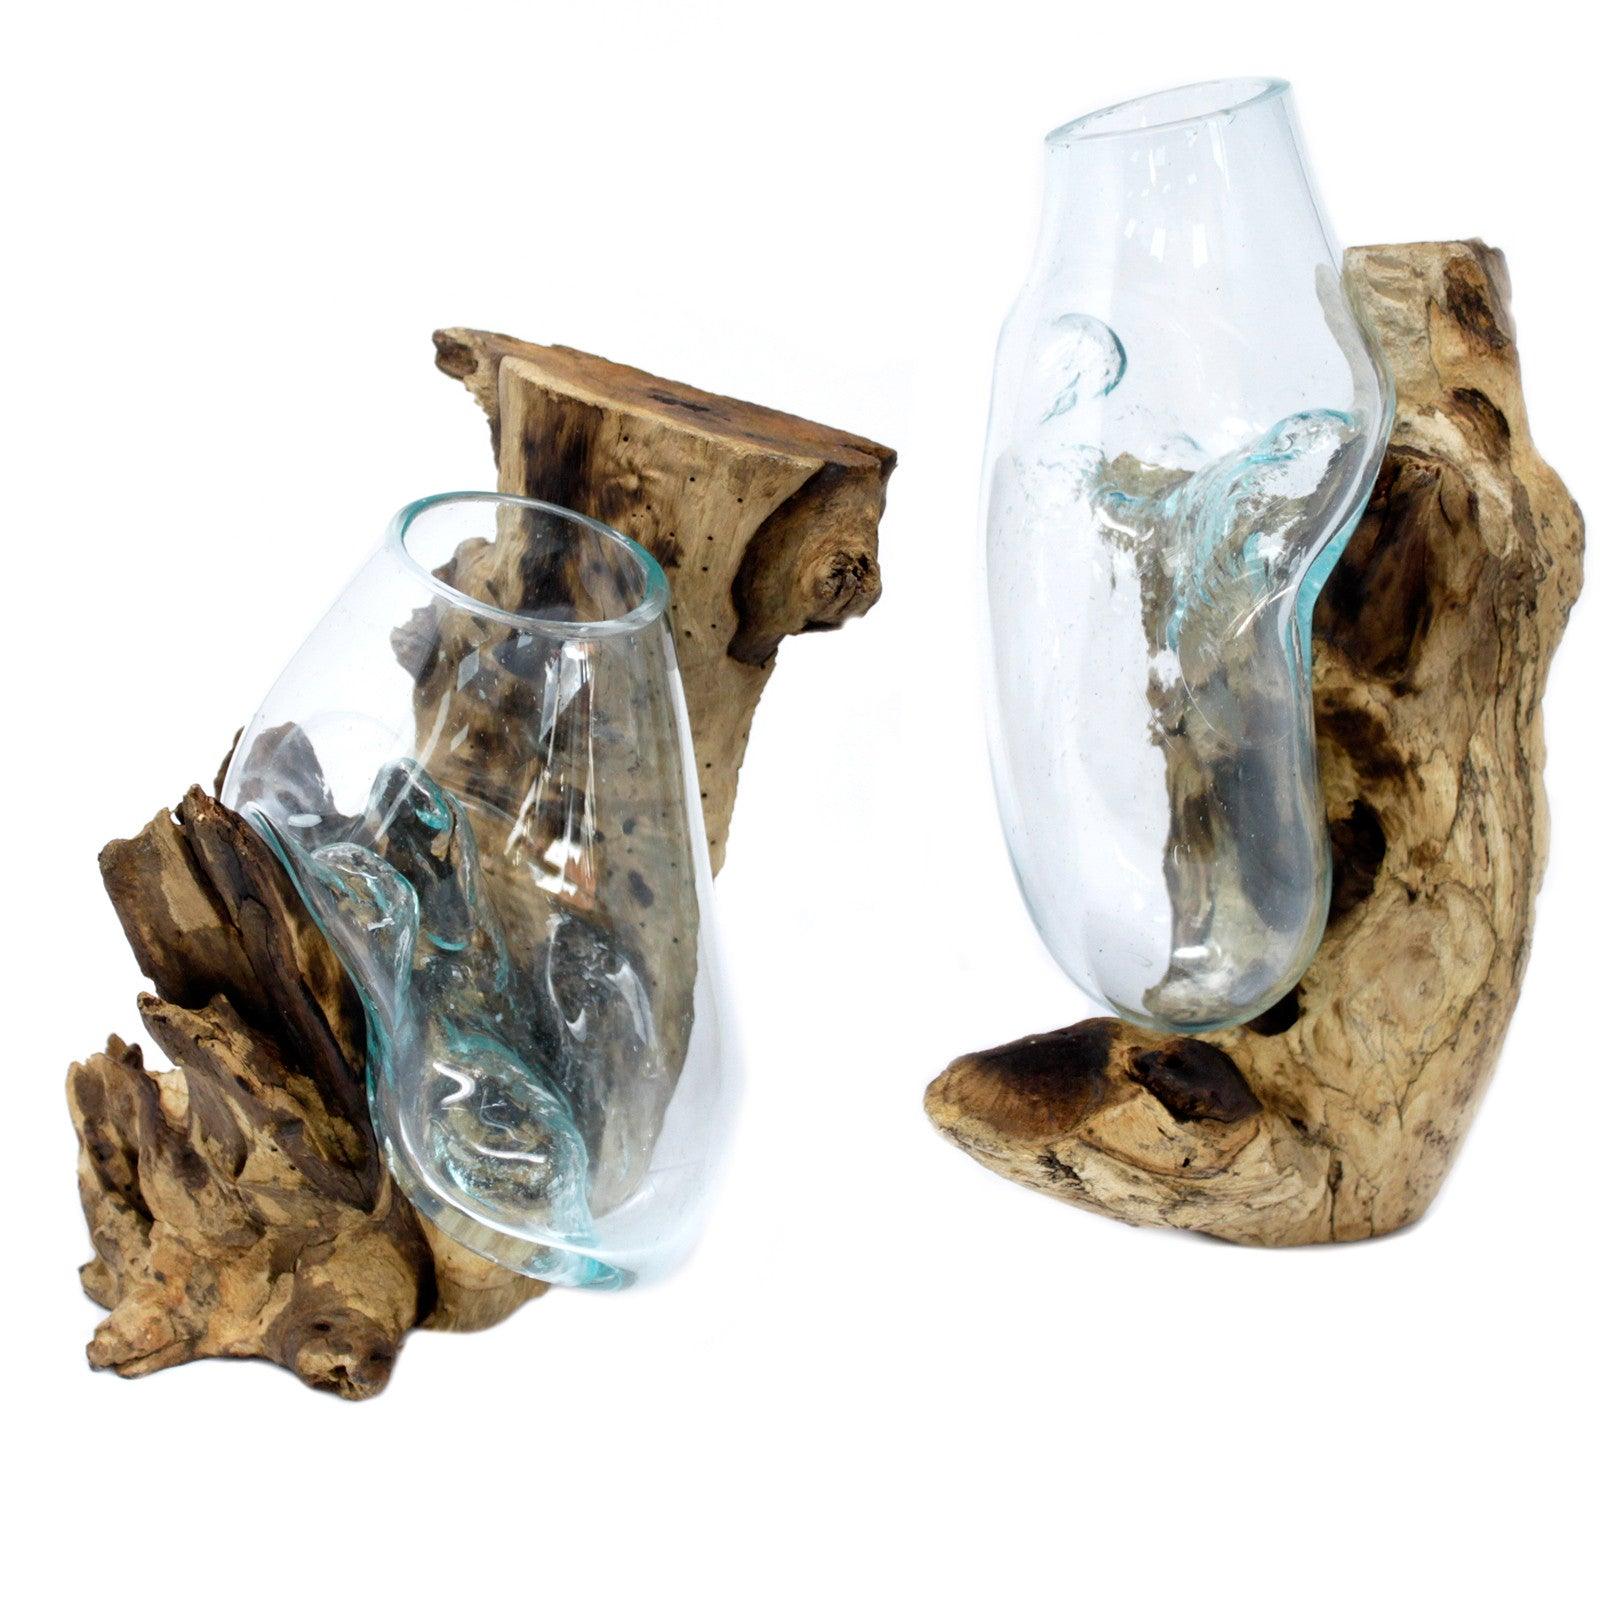 Molten Glass on Wood - Hanging Bowl - Pegasus Group UK